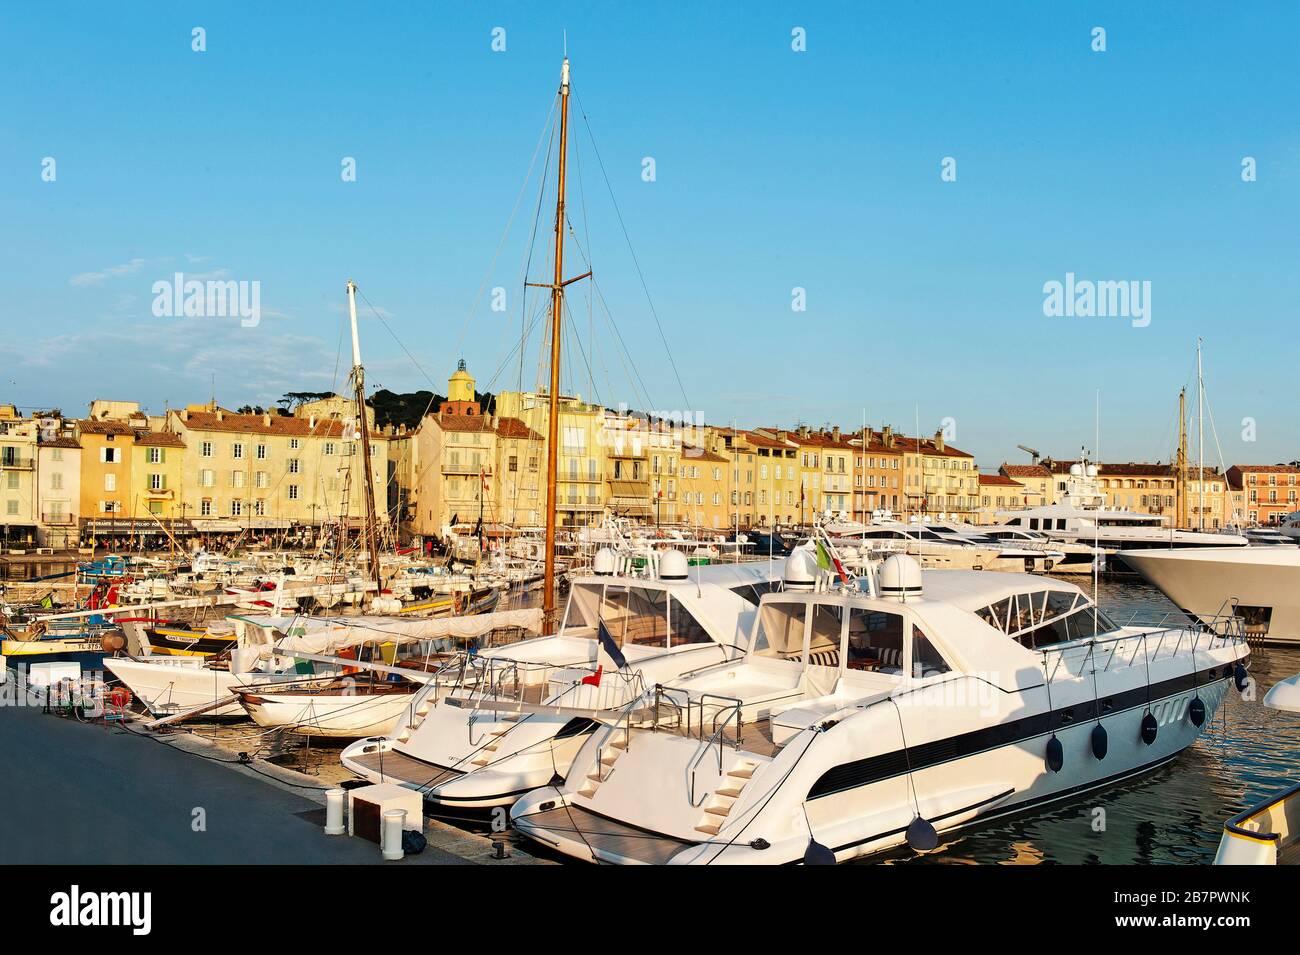 Saint Tropez, France Stock Photo - Alamy